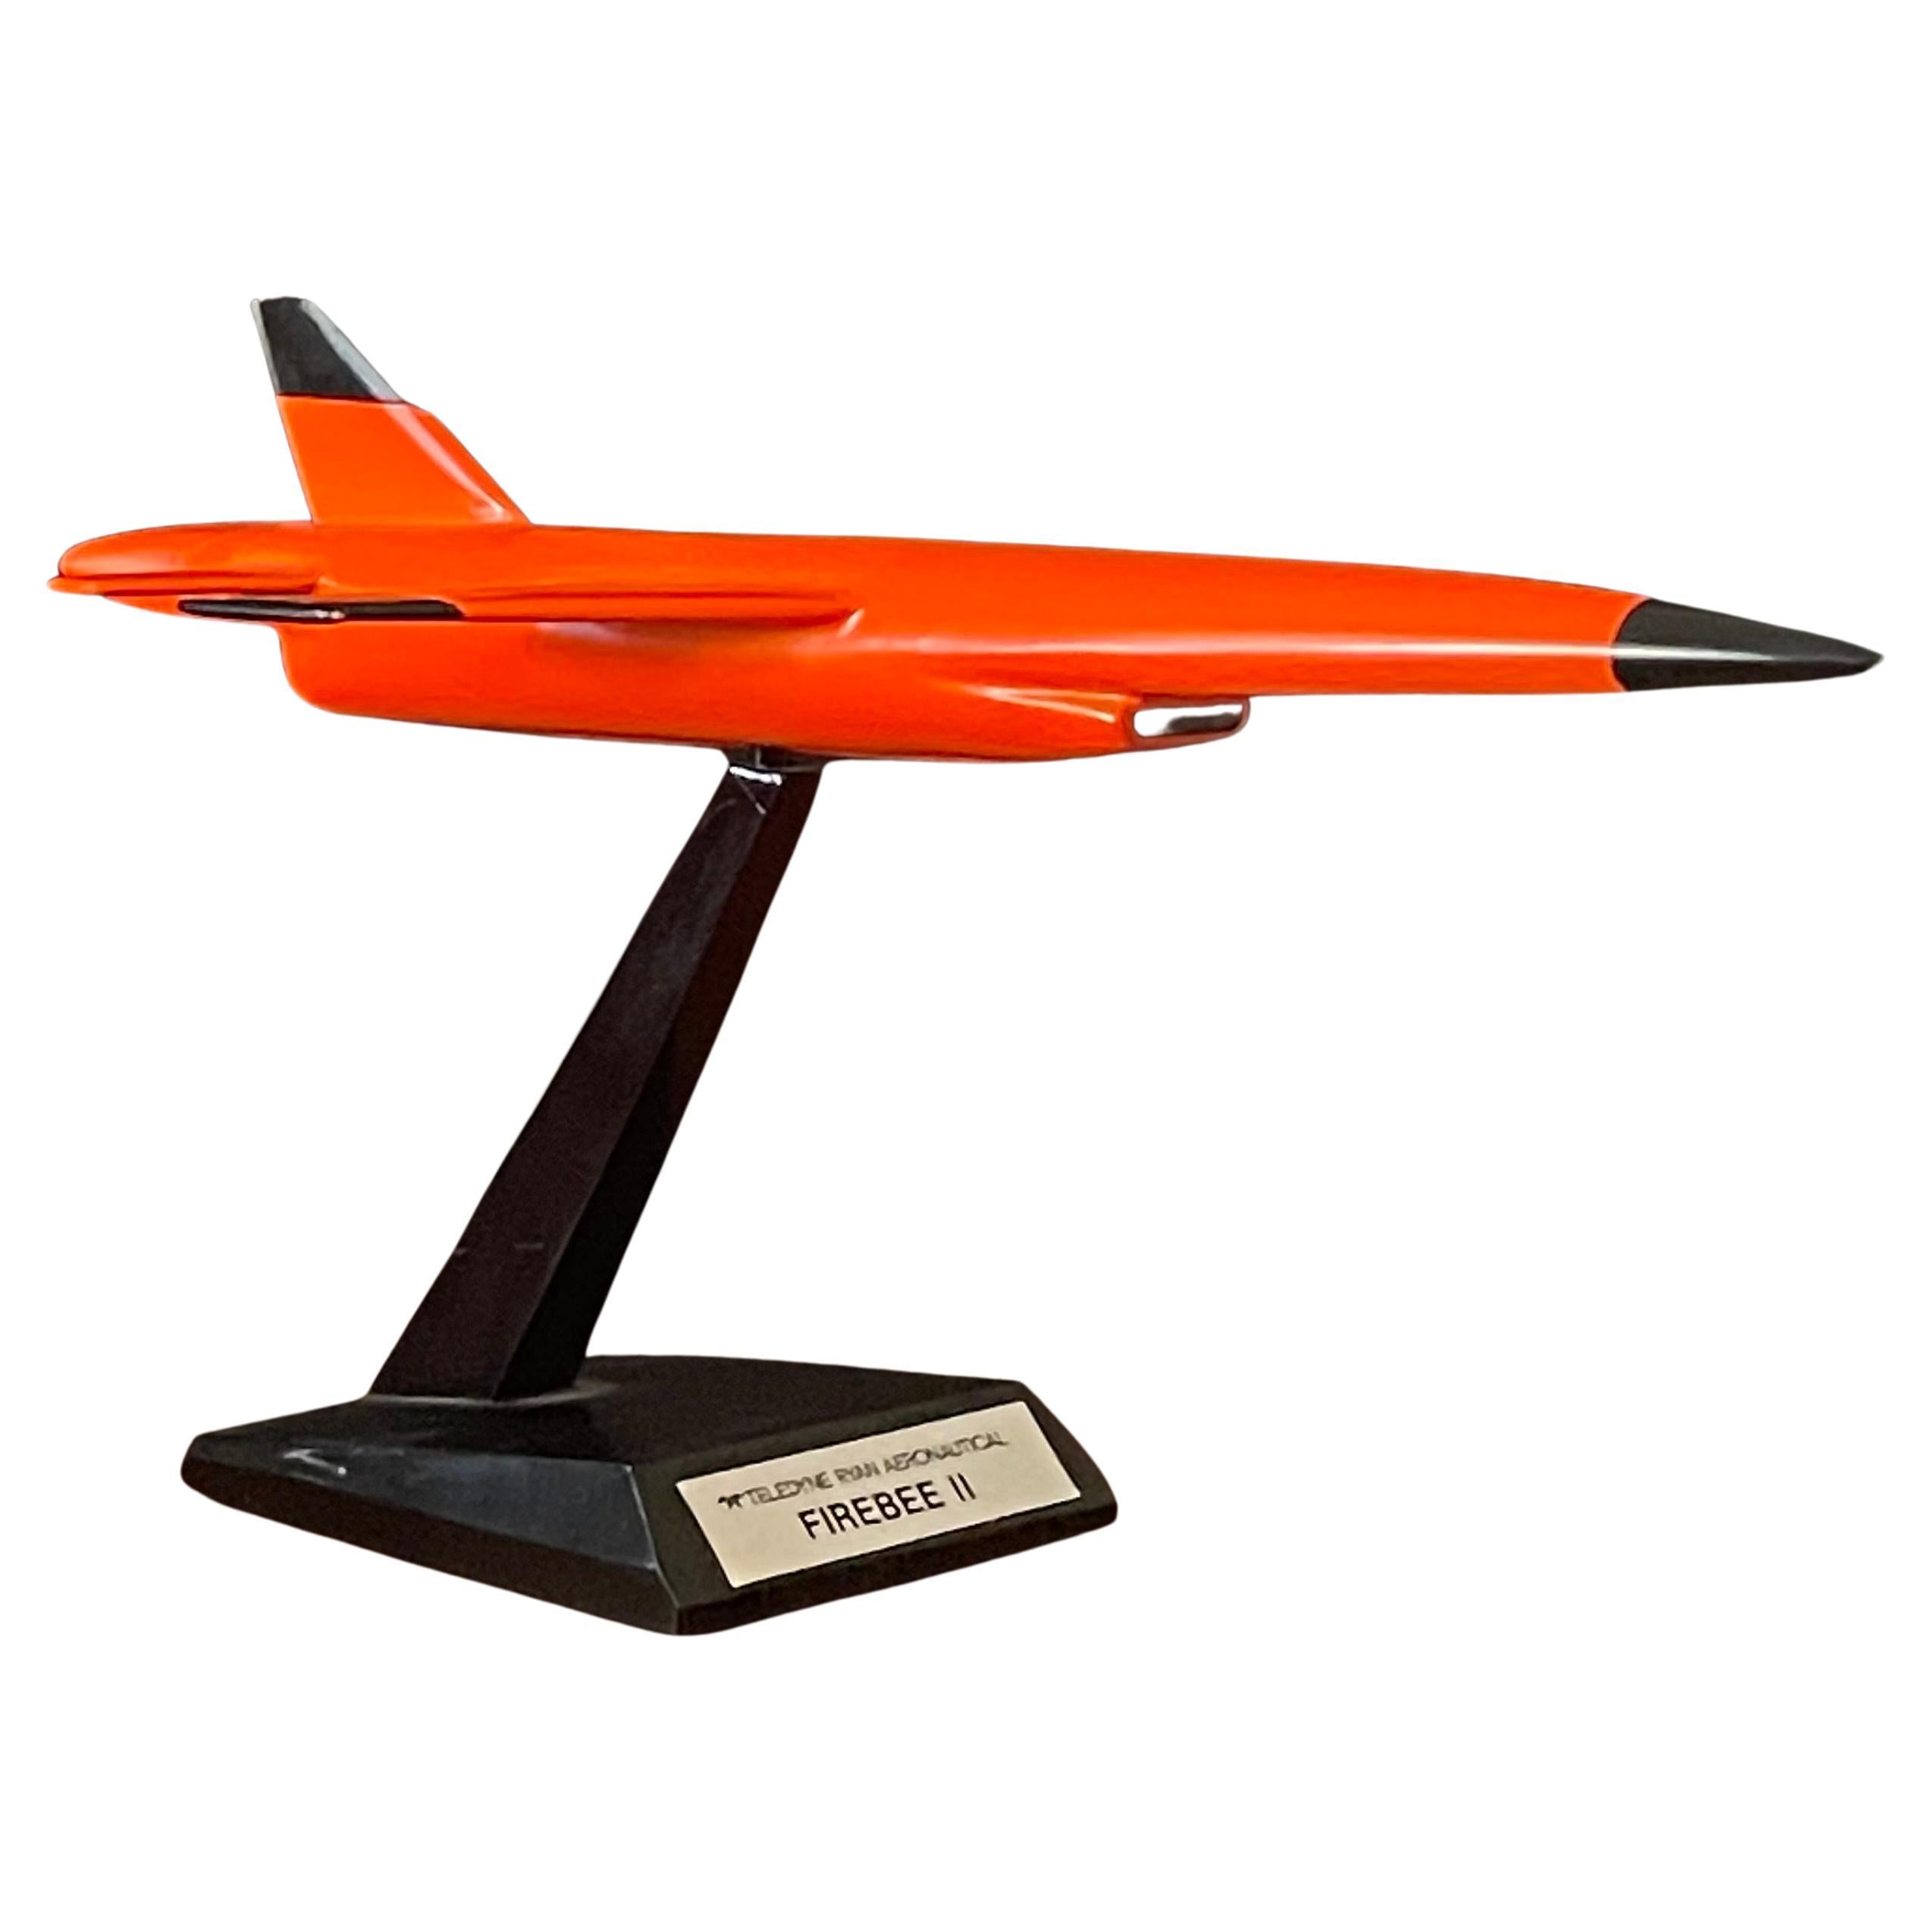 Teledyne Ryan Firebee II Drone Contractor's Desk Model For Sale